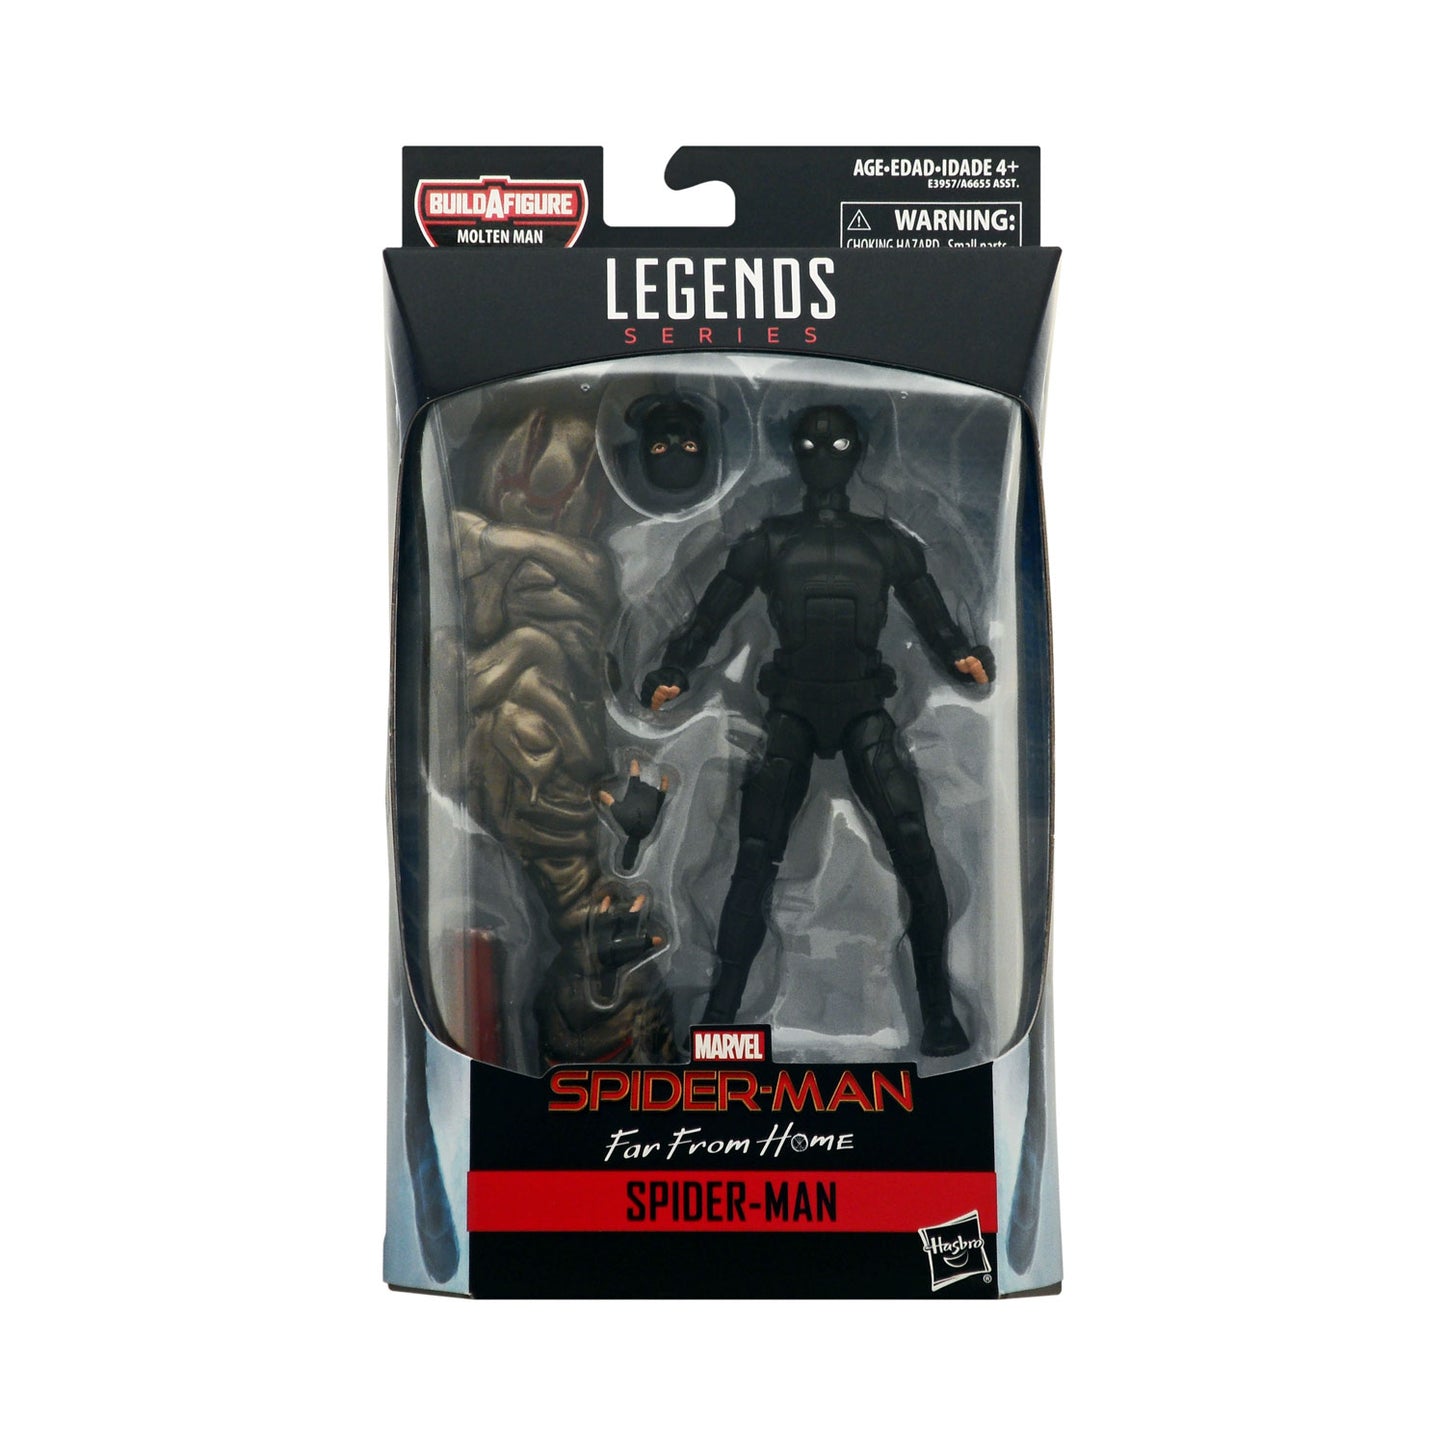 Marvel Legends Molten Man Series Stealth Suit Spider-Man